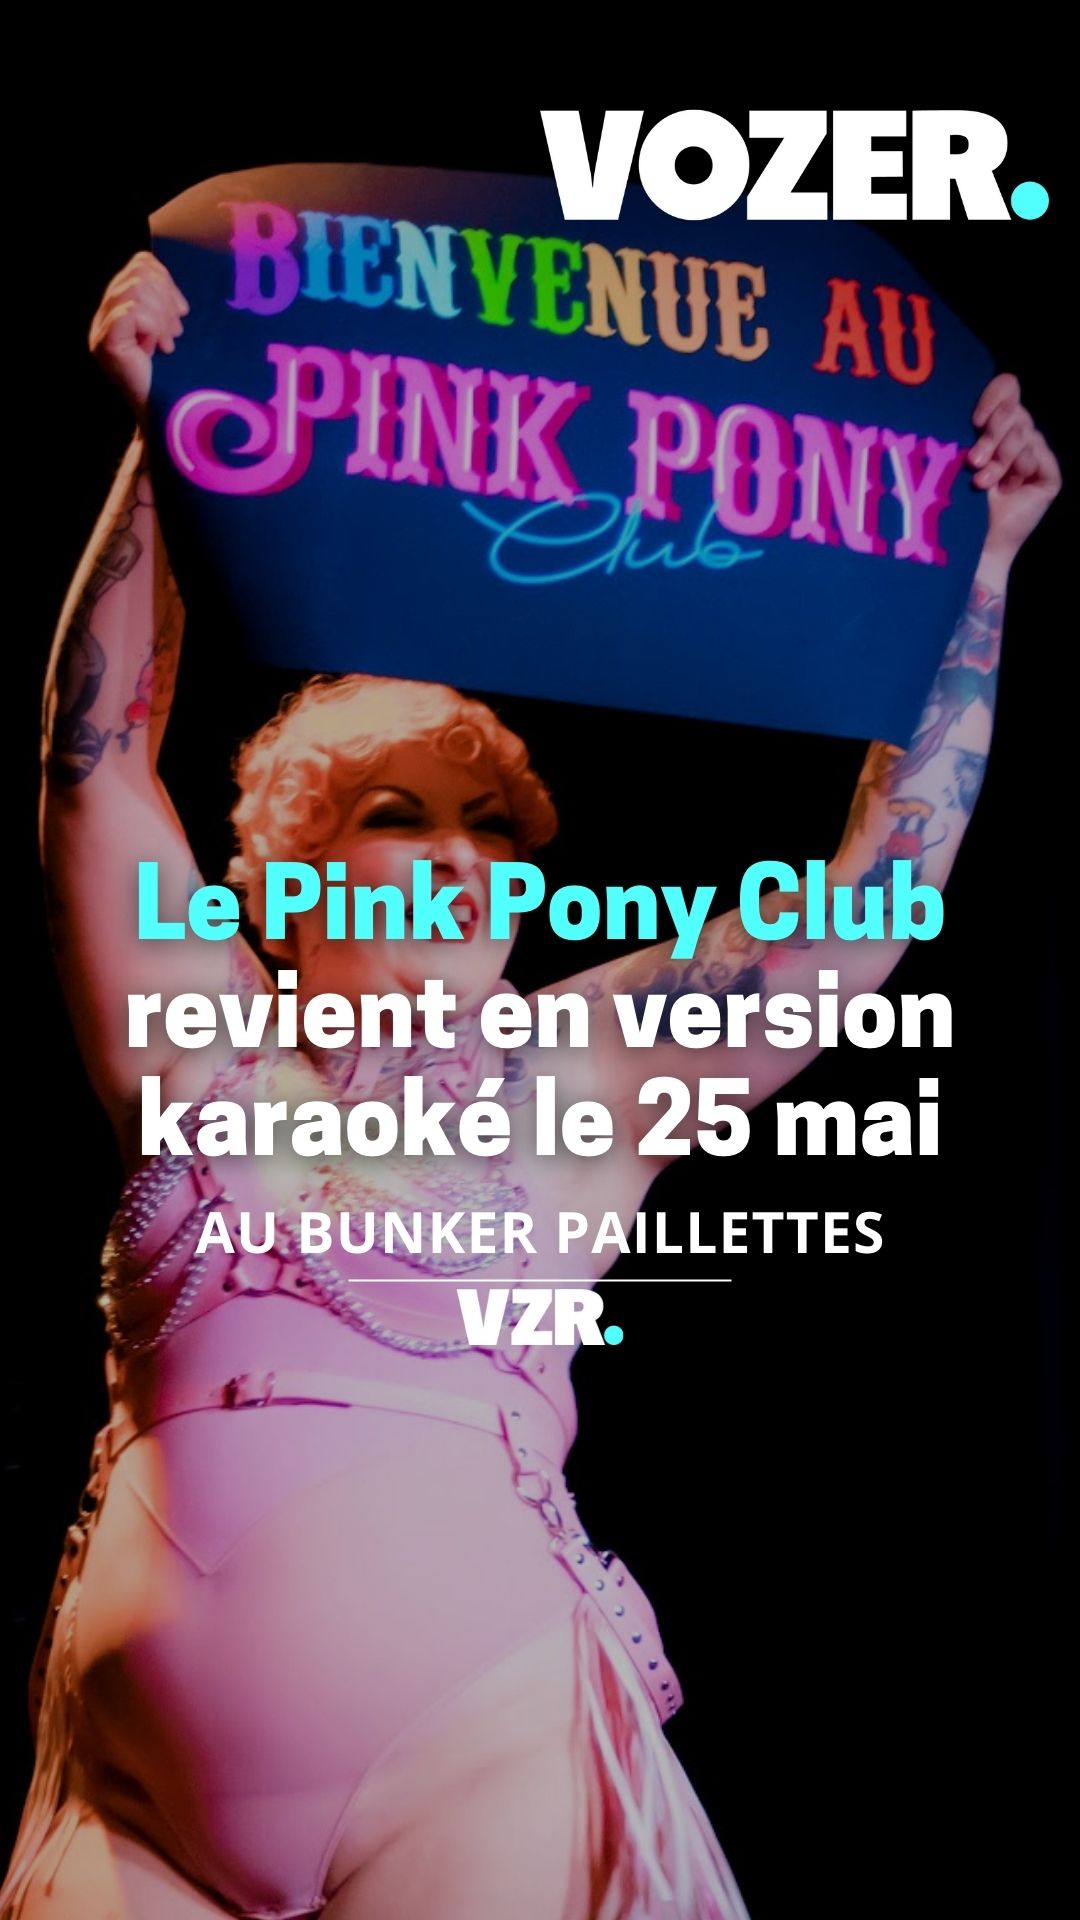 Le Pink Pony Club revient en version karaoké le 25 mai